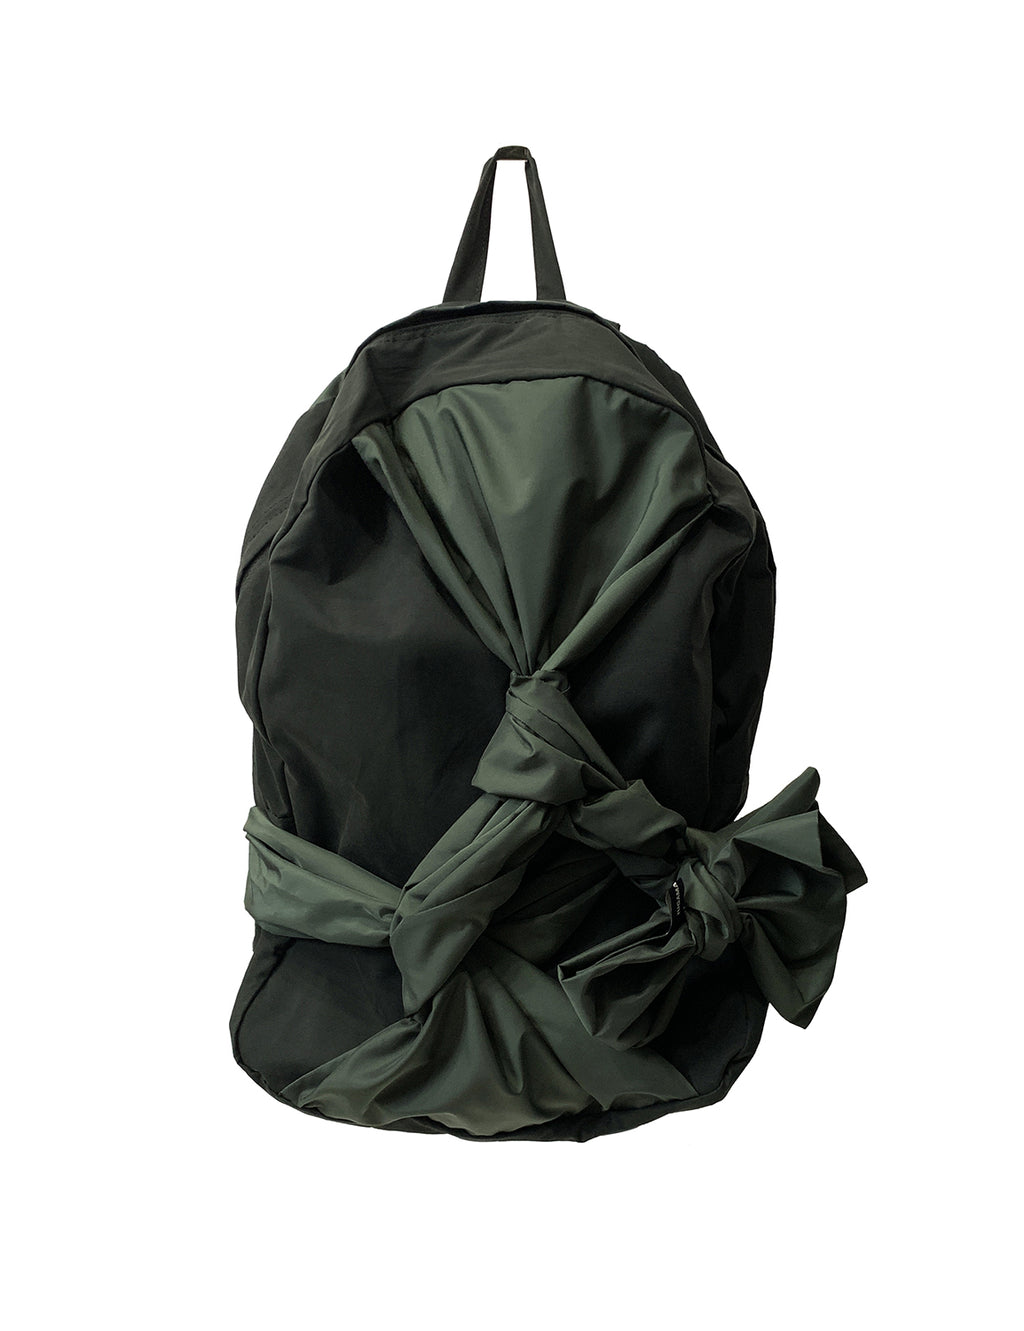 ノッテッドバックパック/Knotted Backpack (Olive green) – 60